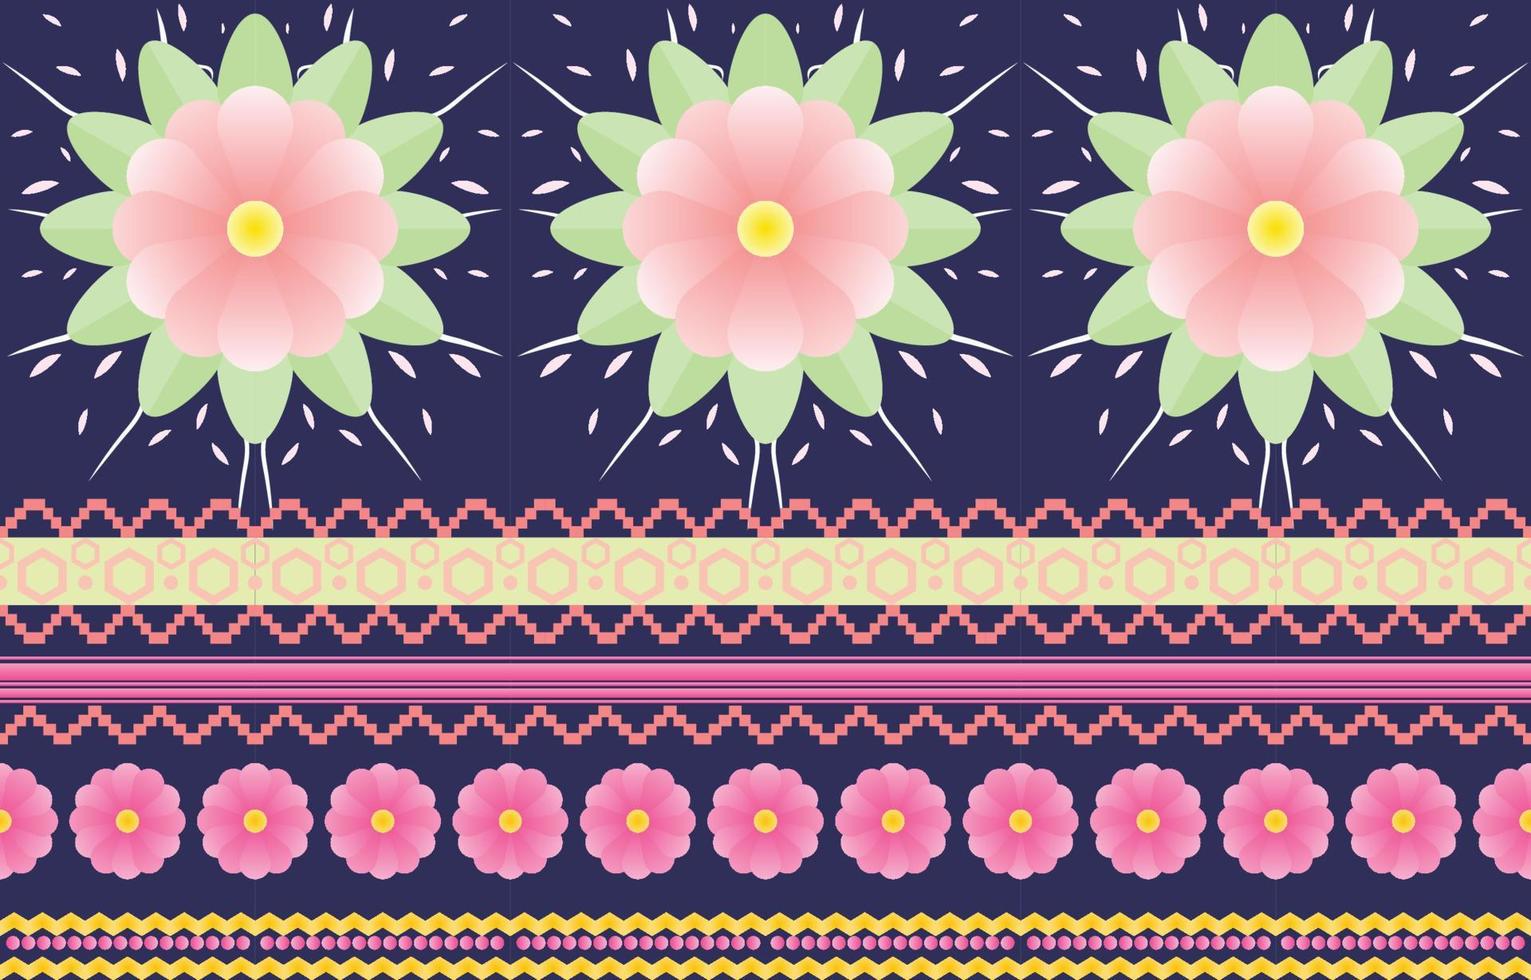 mandala fiore colorato tessuto. geometrico etnico modello nel tradizionale orientale sfondo design per tappeto, carta da parati, abbigliamento, confezionamento, batik, vettore illustrazione ricamo stile.